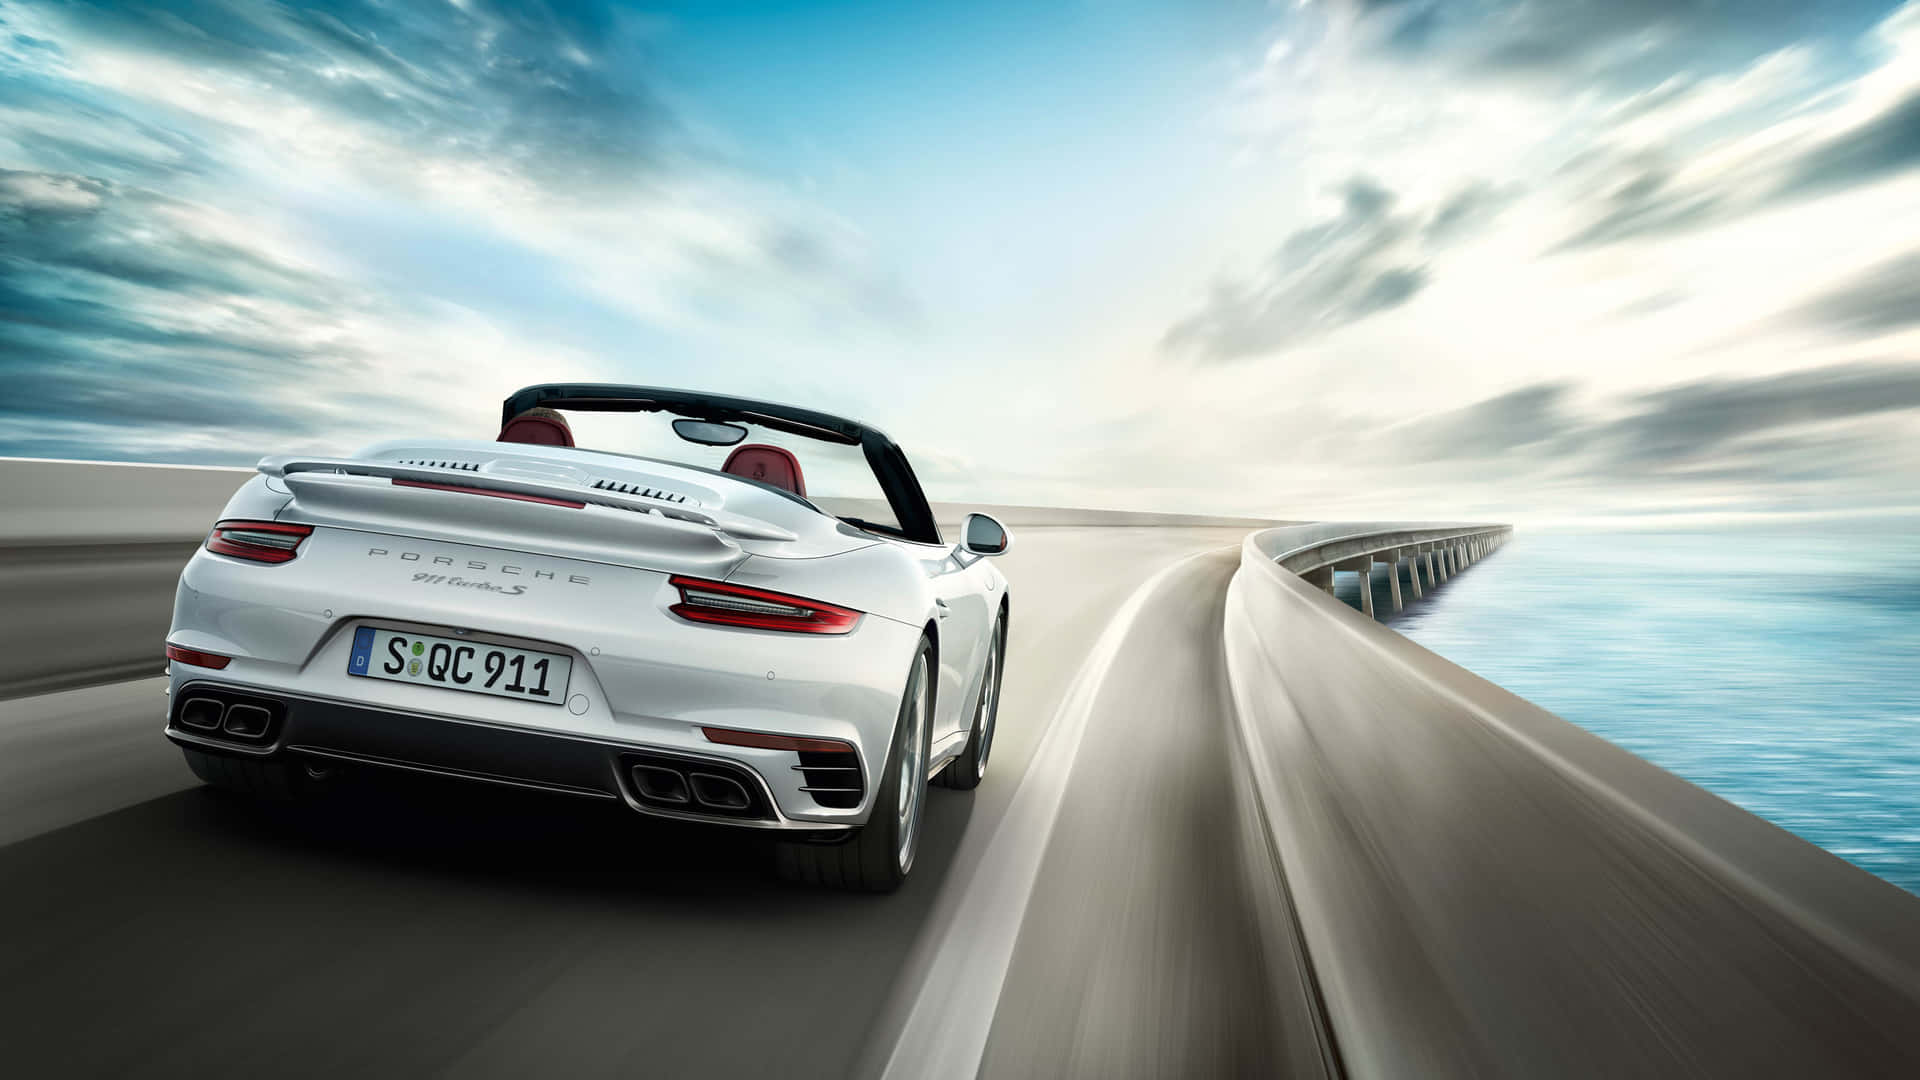 Stilosaauto Sportiva Porsche Nera In Un Emozionante Road Trip Sotto Un Cielo Nuvoloso.